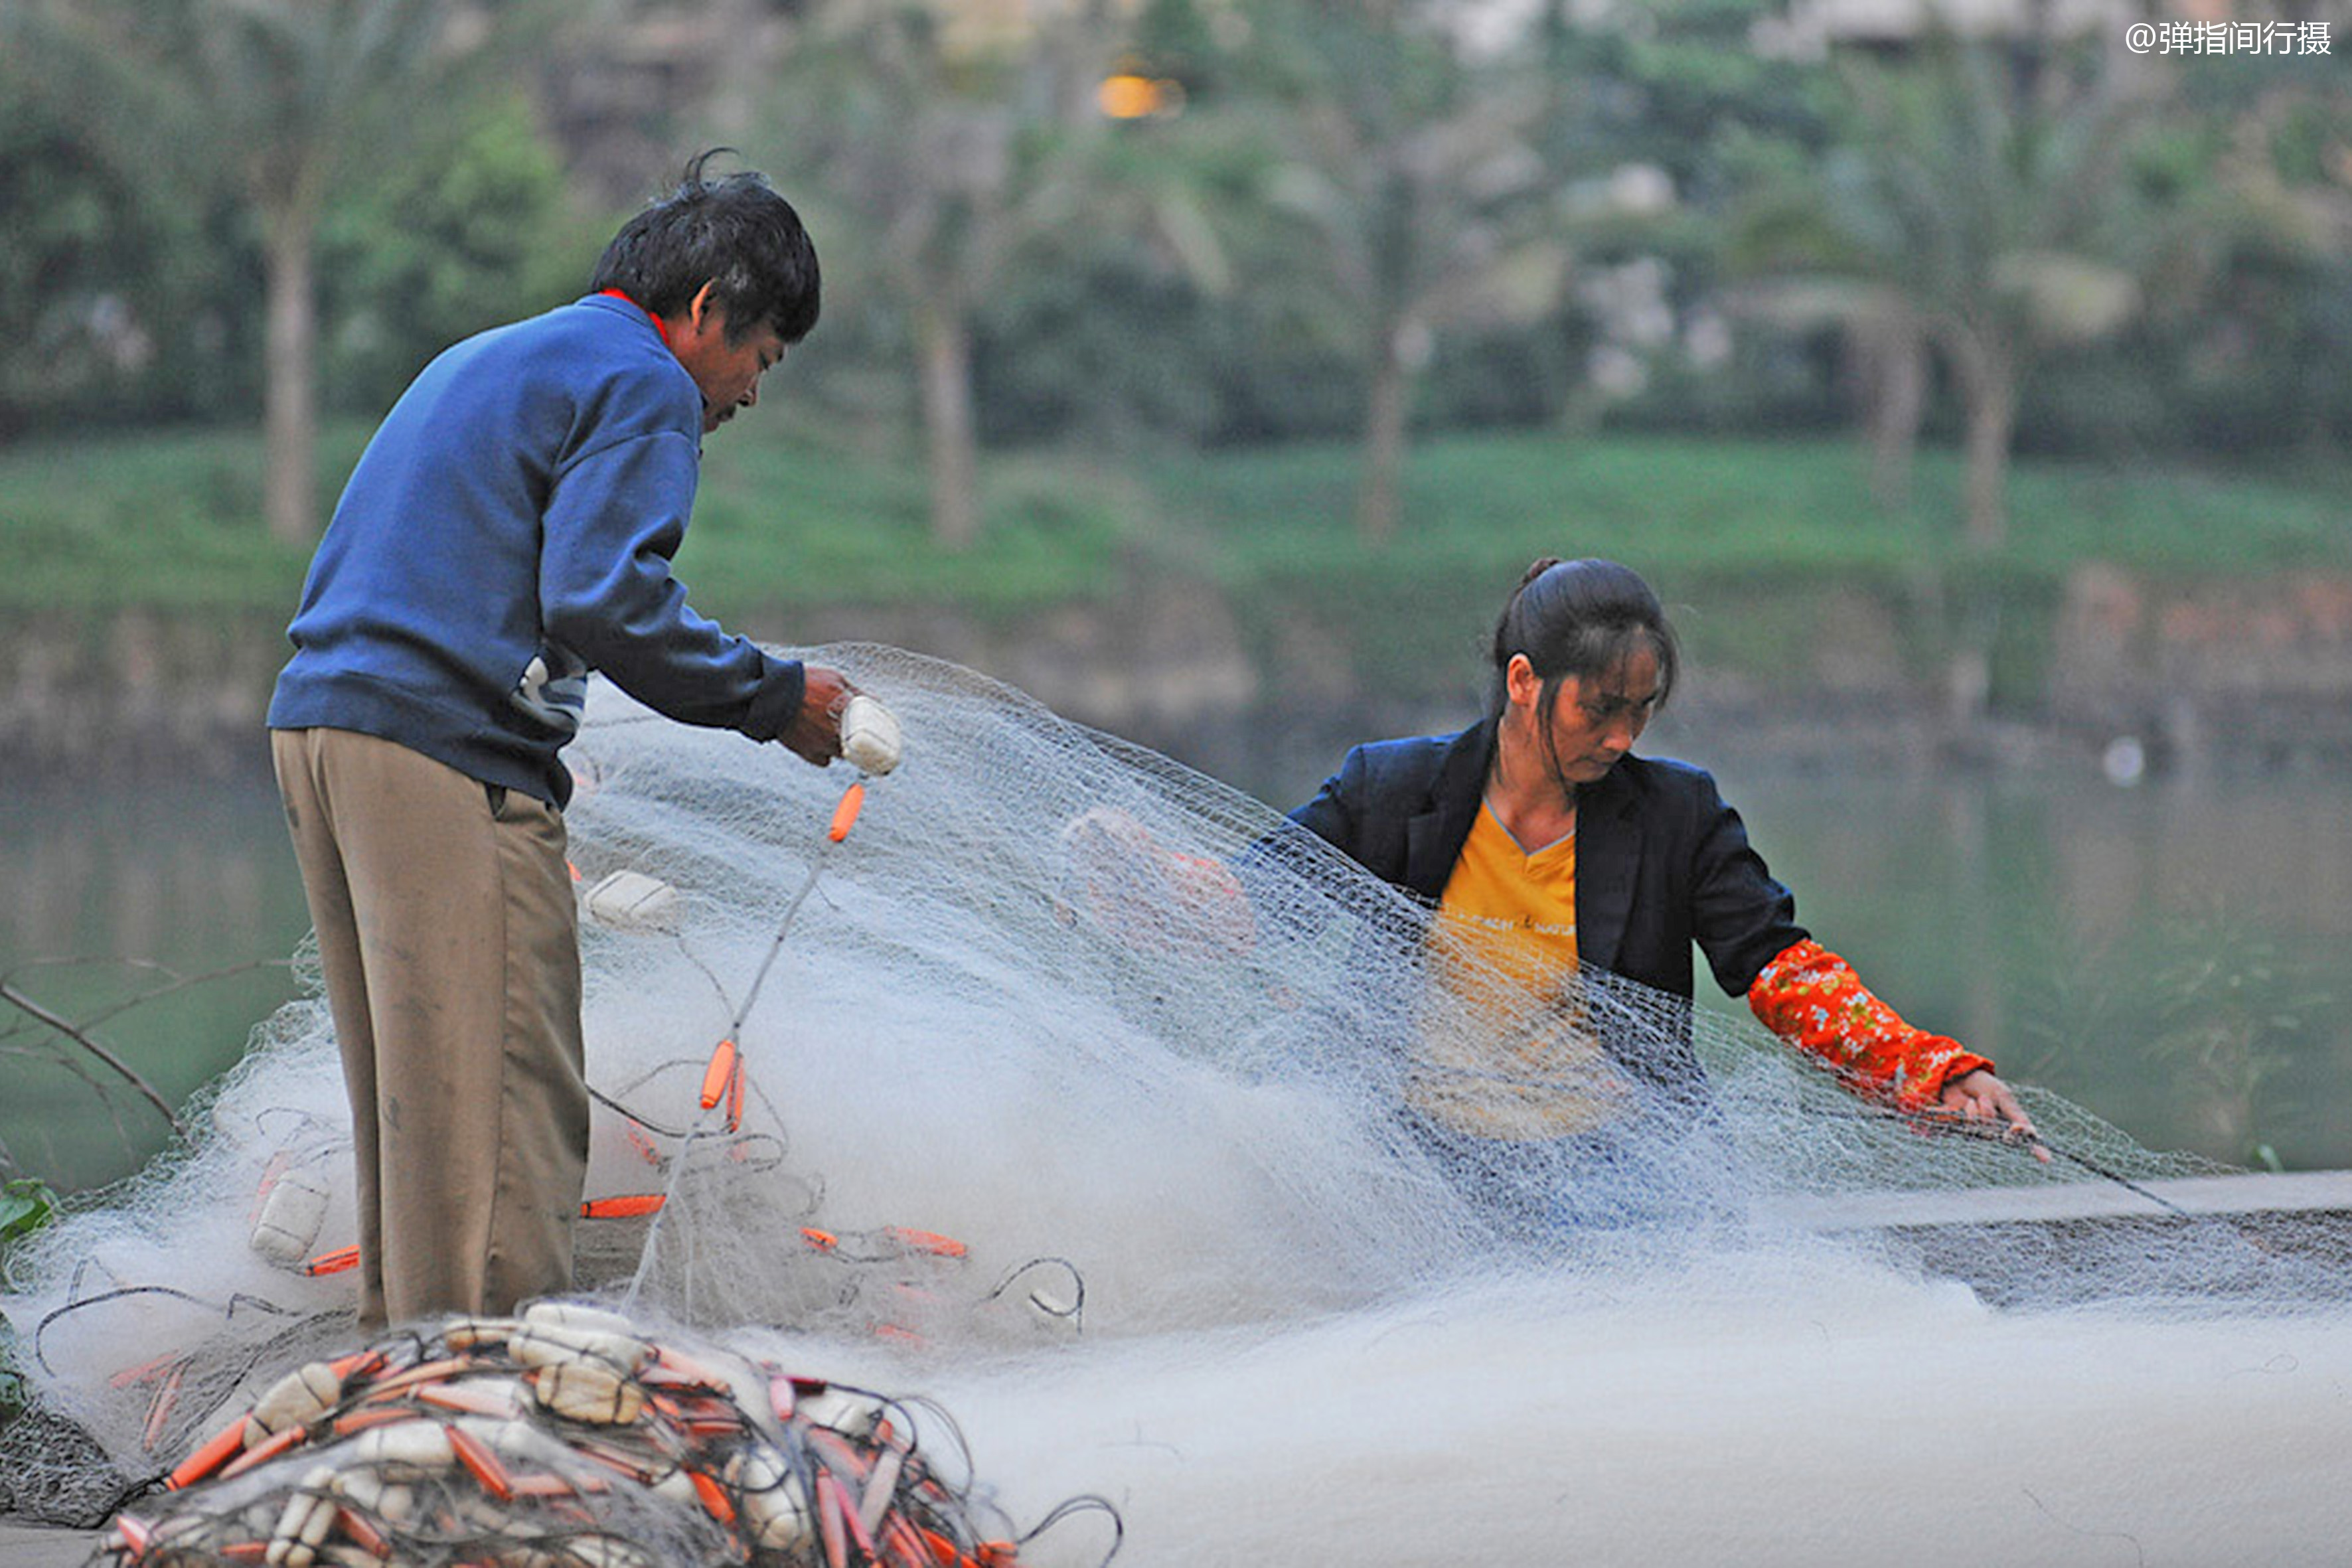 原创海南海口渔民:在高楼大厦下补渔网,这才是城市最动人的风景